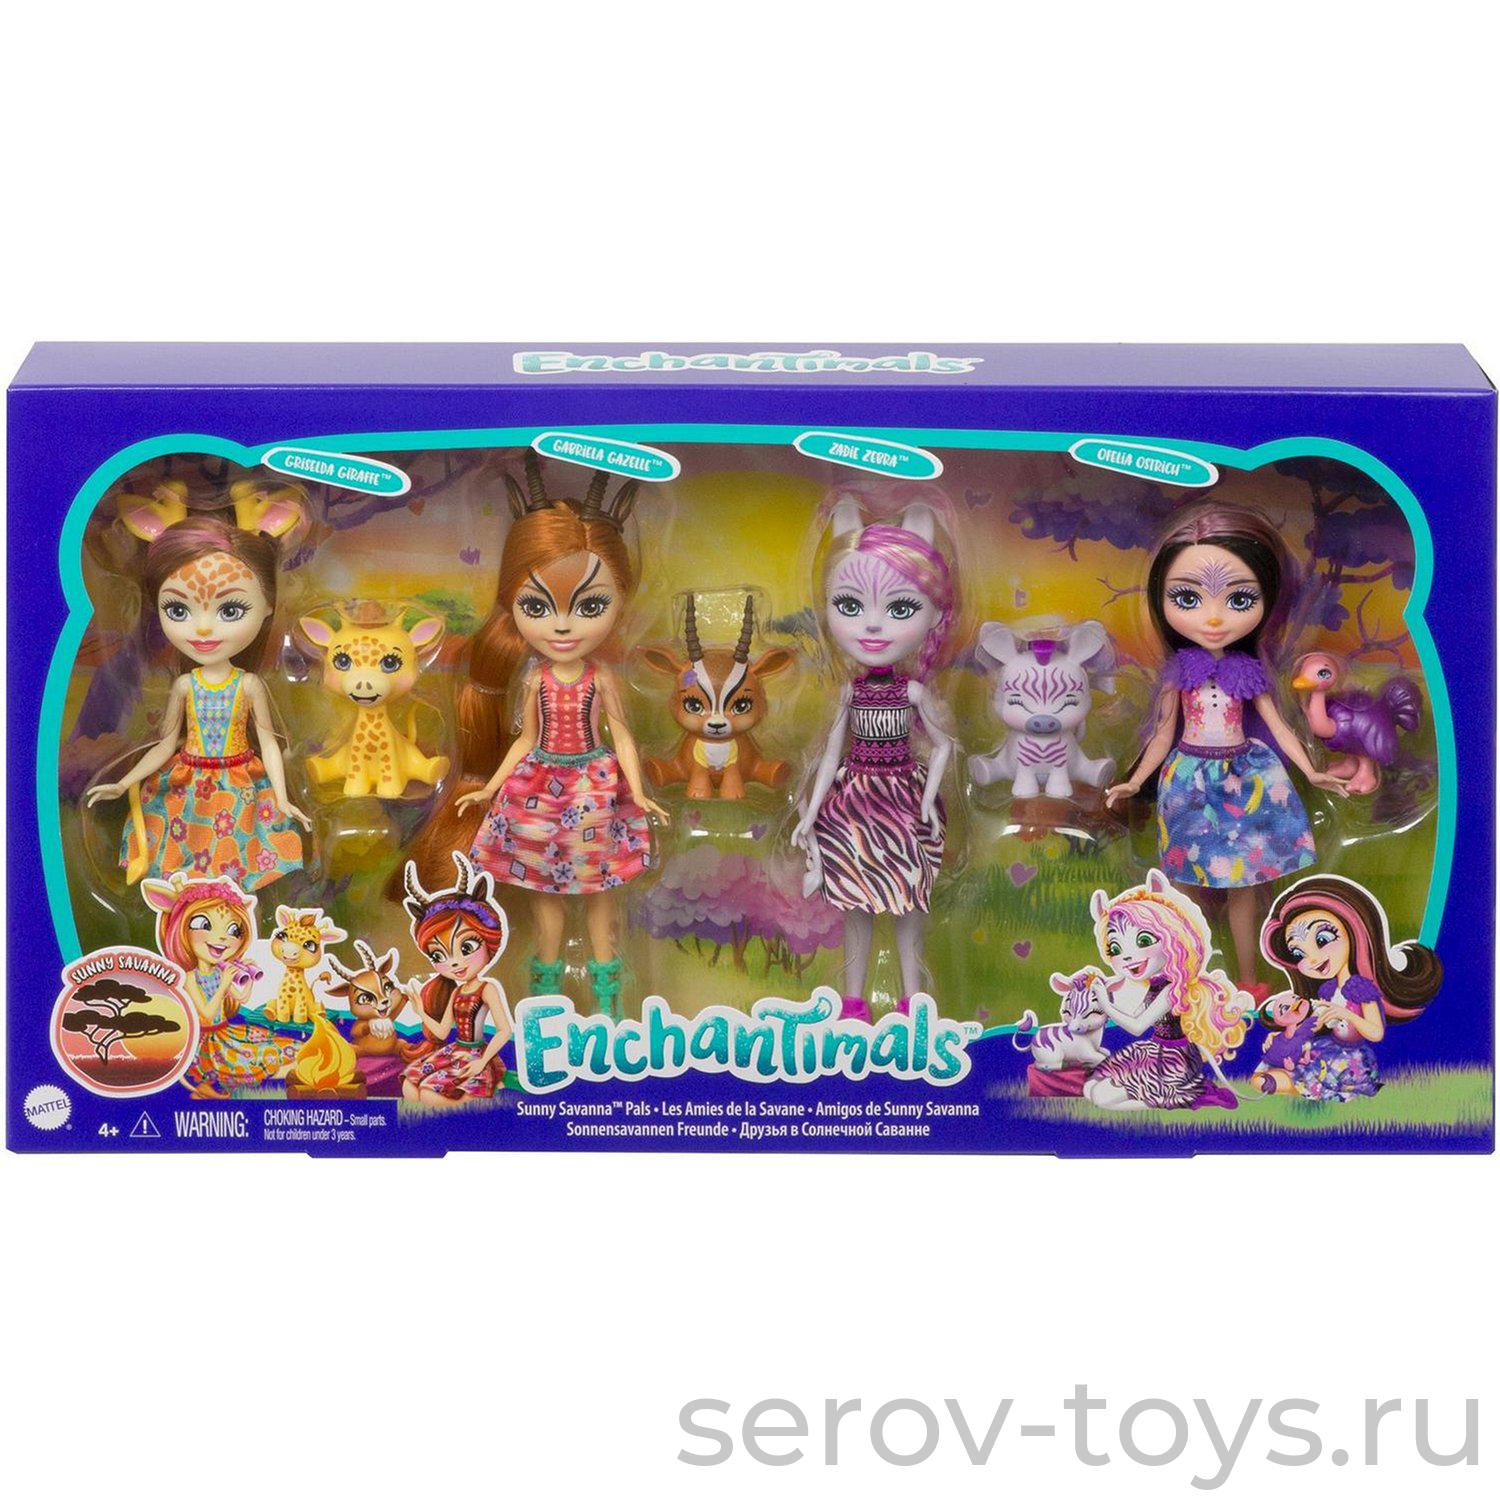 Enchantimals Набор Друзья в Солнечной Саванне куклы+фигурки GYN57